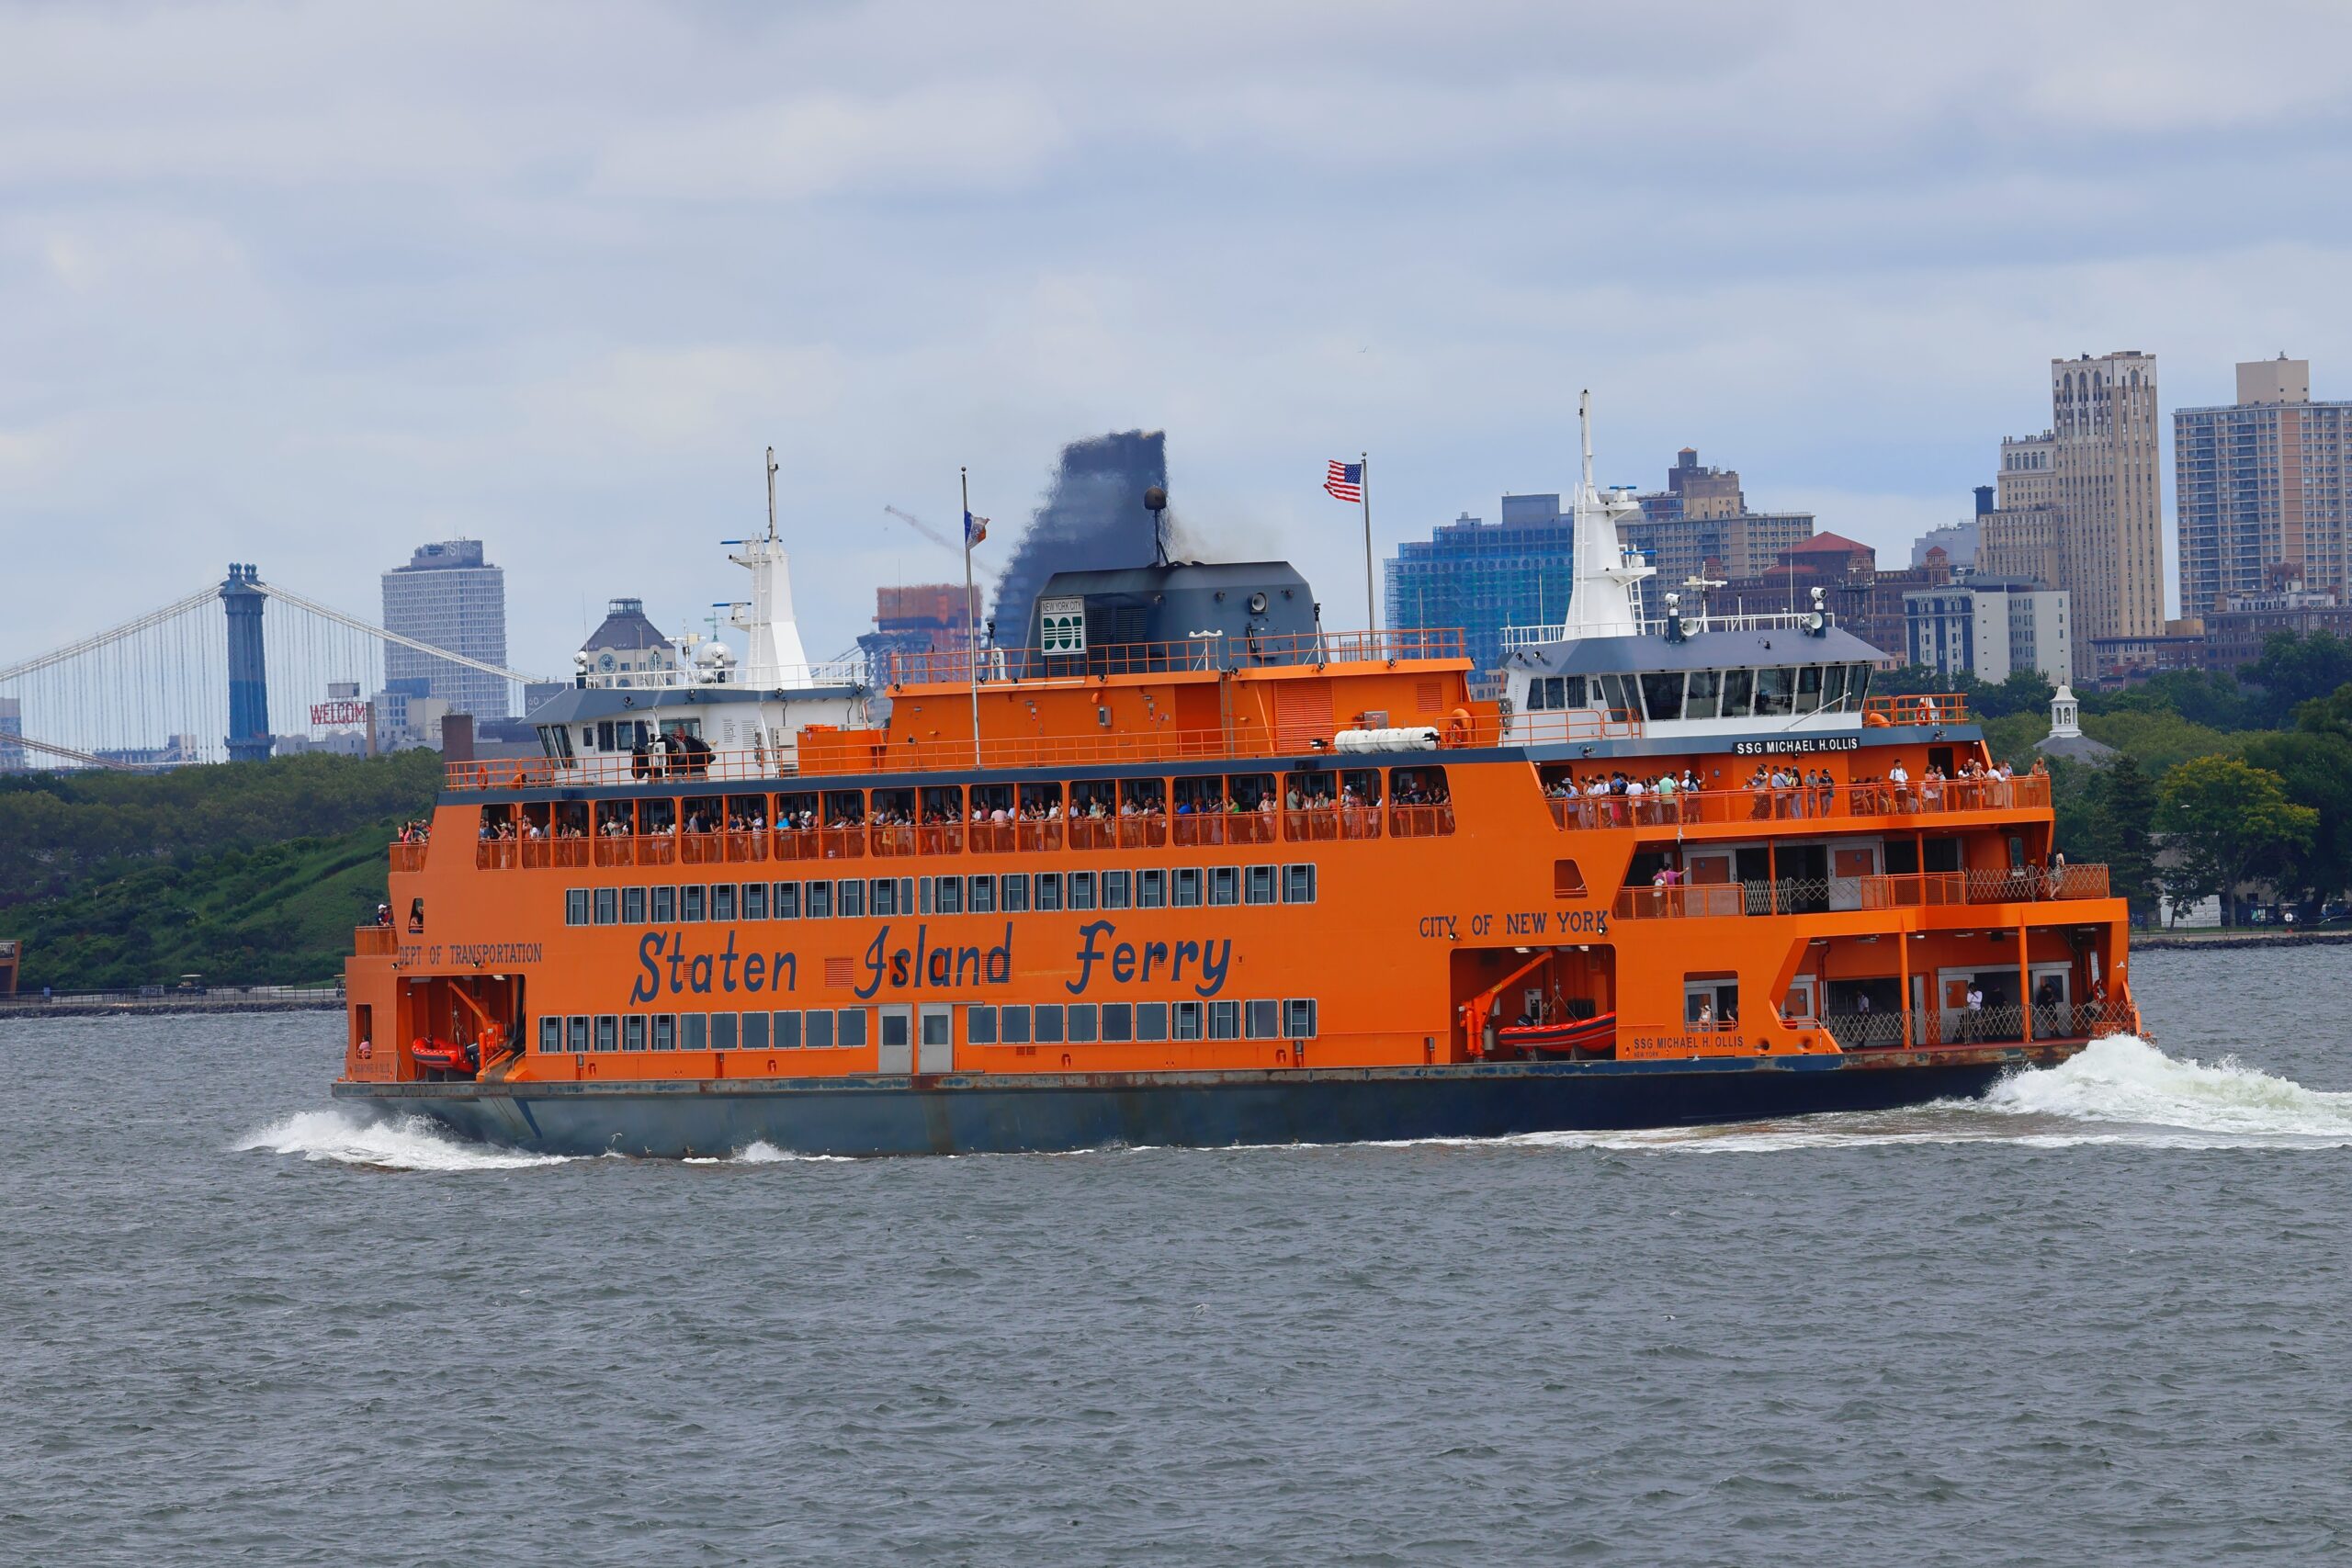 Die Staten Island Ferry ist ein offizielles Verkehrsmittel, welches Manhattan mit Staten Island verbindet